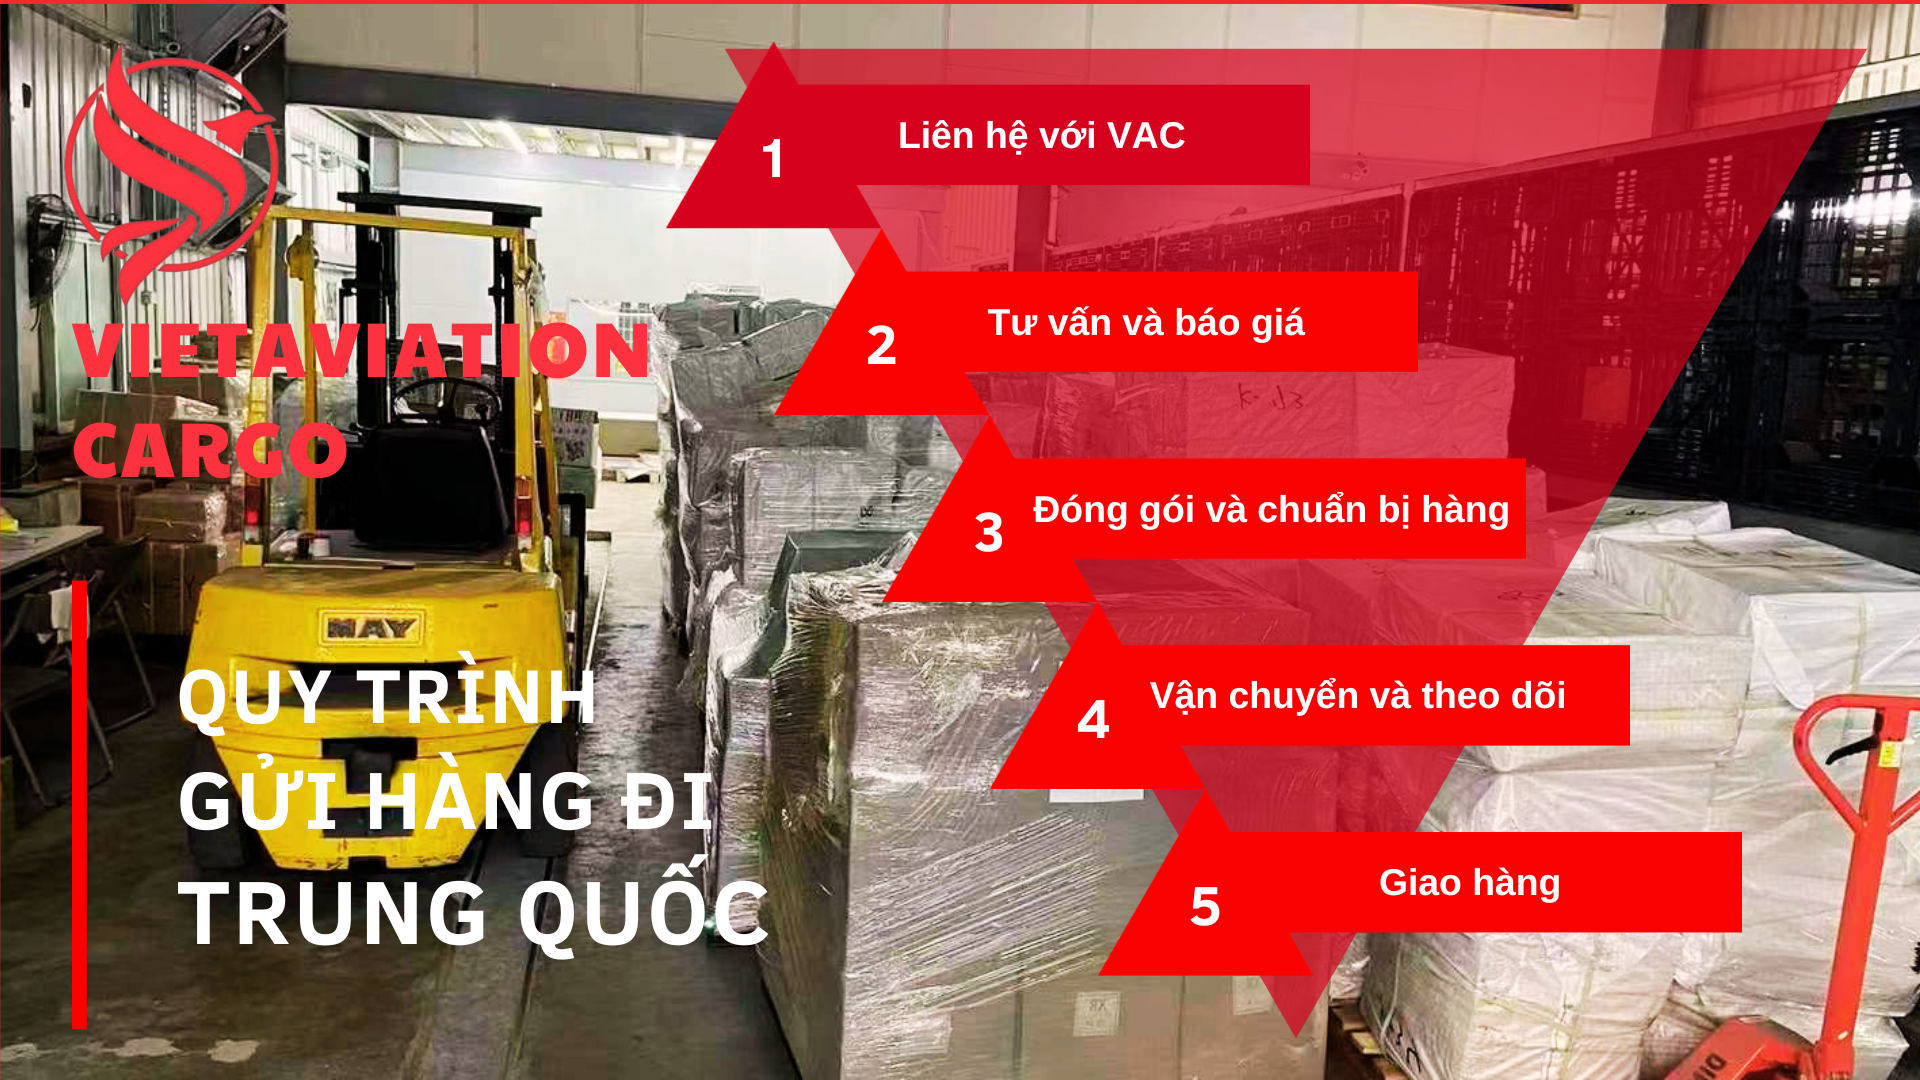 Quy trình vận chuyển hàng đi Trung Quốc ở VAC